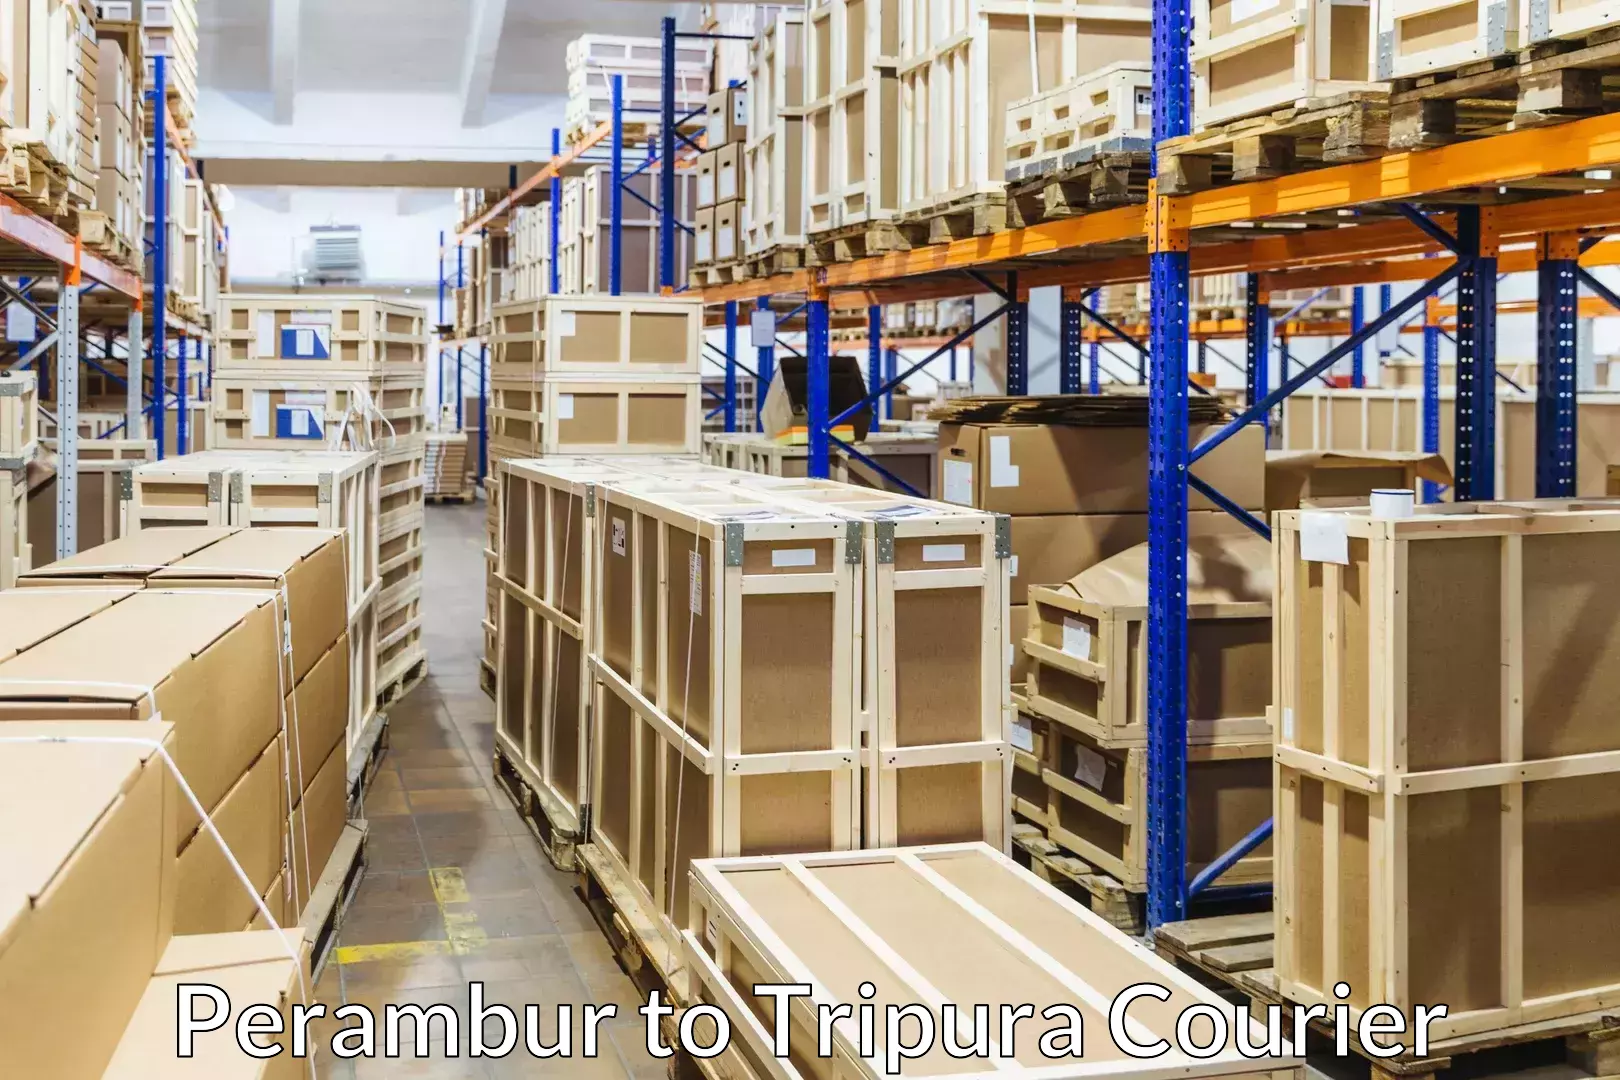 Efficient furniture transport Perambur to Tripura